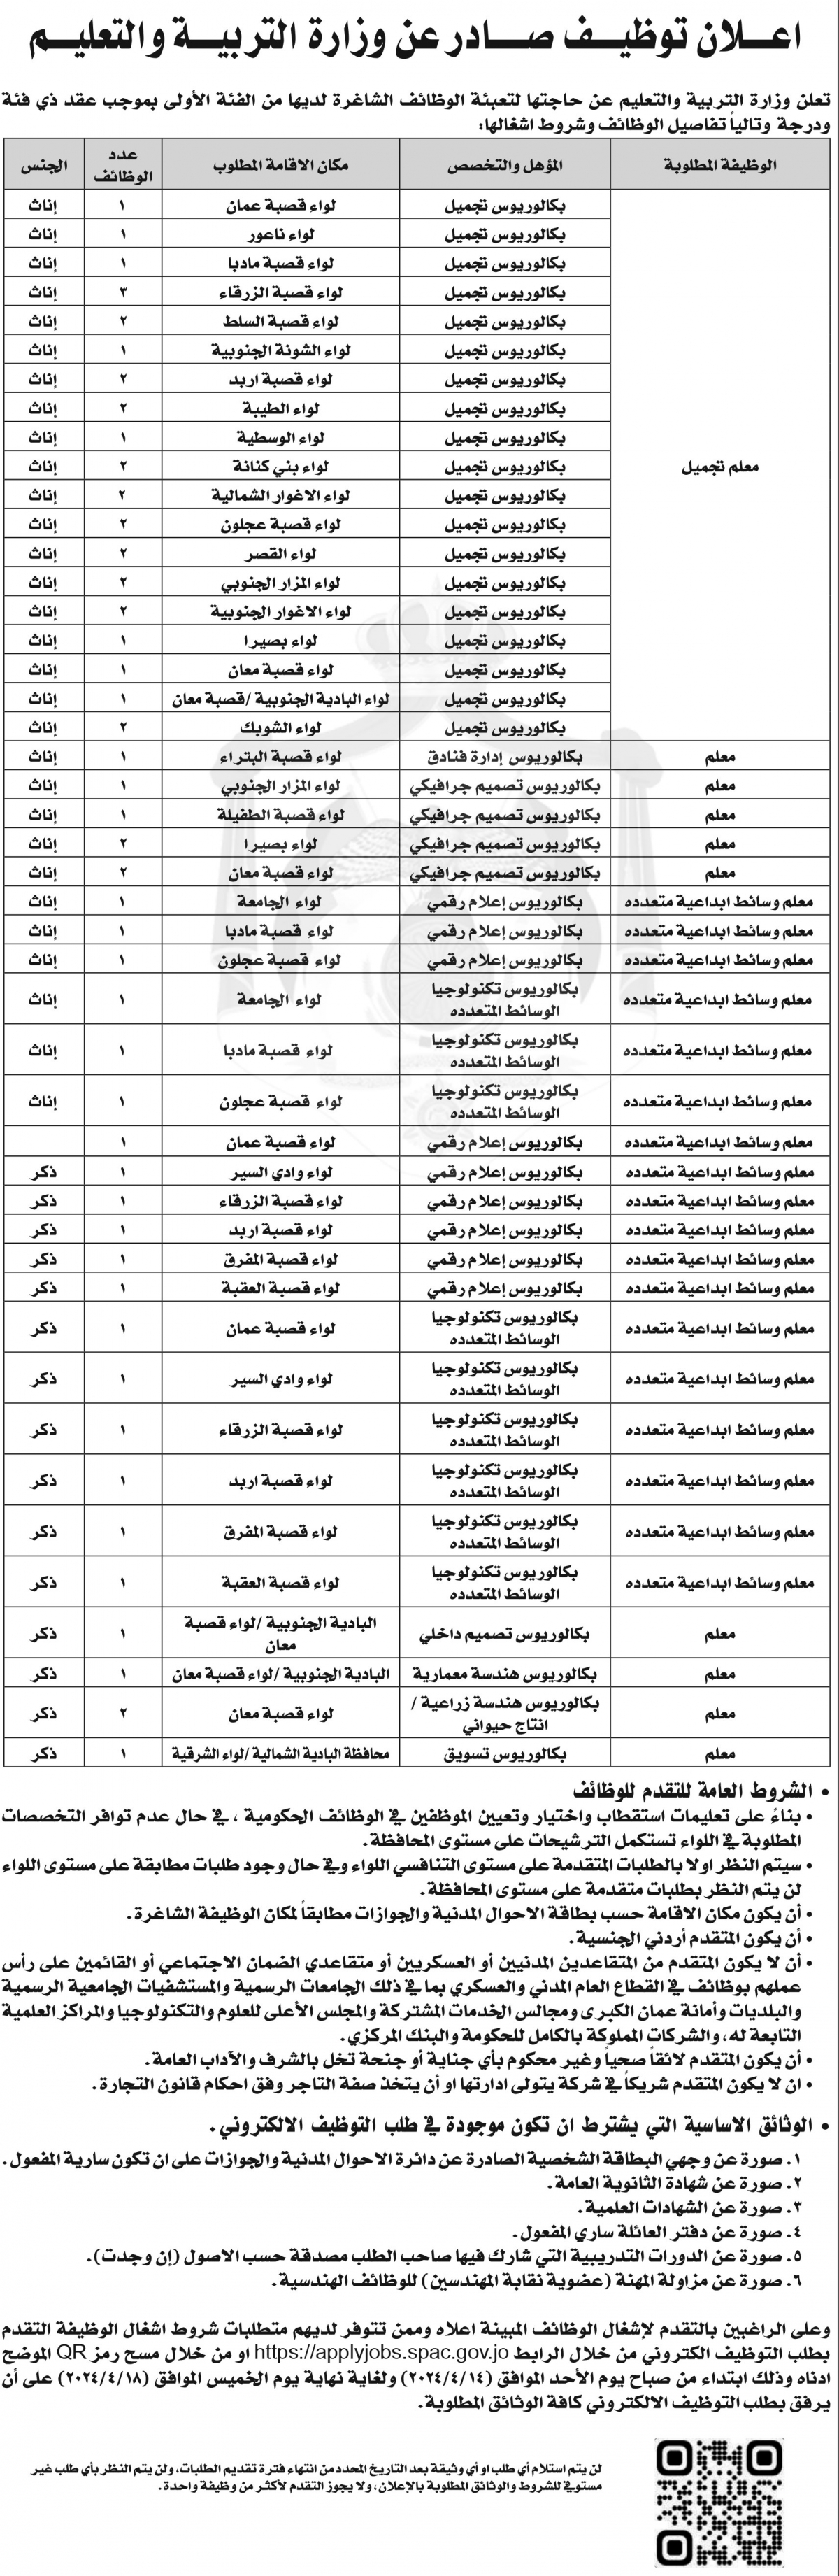 وزارة التربية تعلن حاجتها لتعيين عدد كبير من الأردنيين في وظائف متنوعة (تفاصيل)